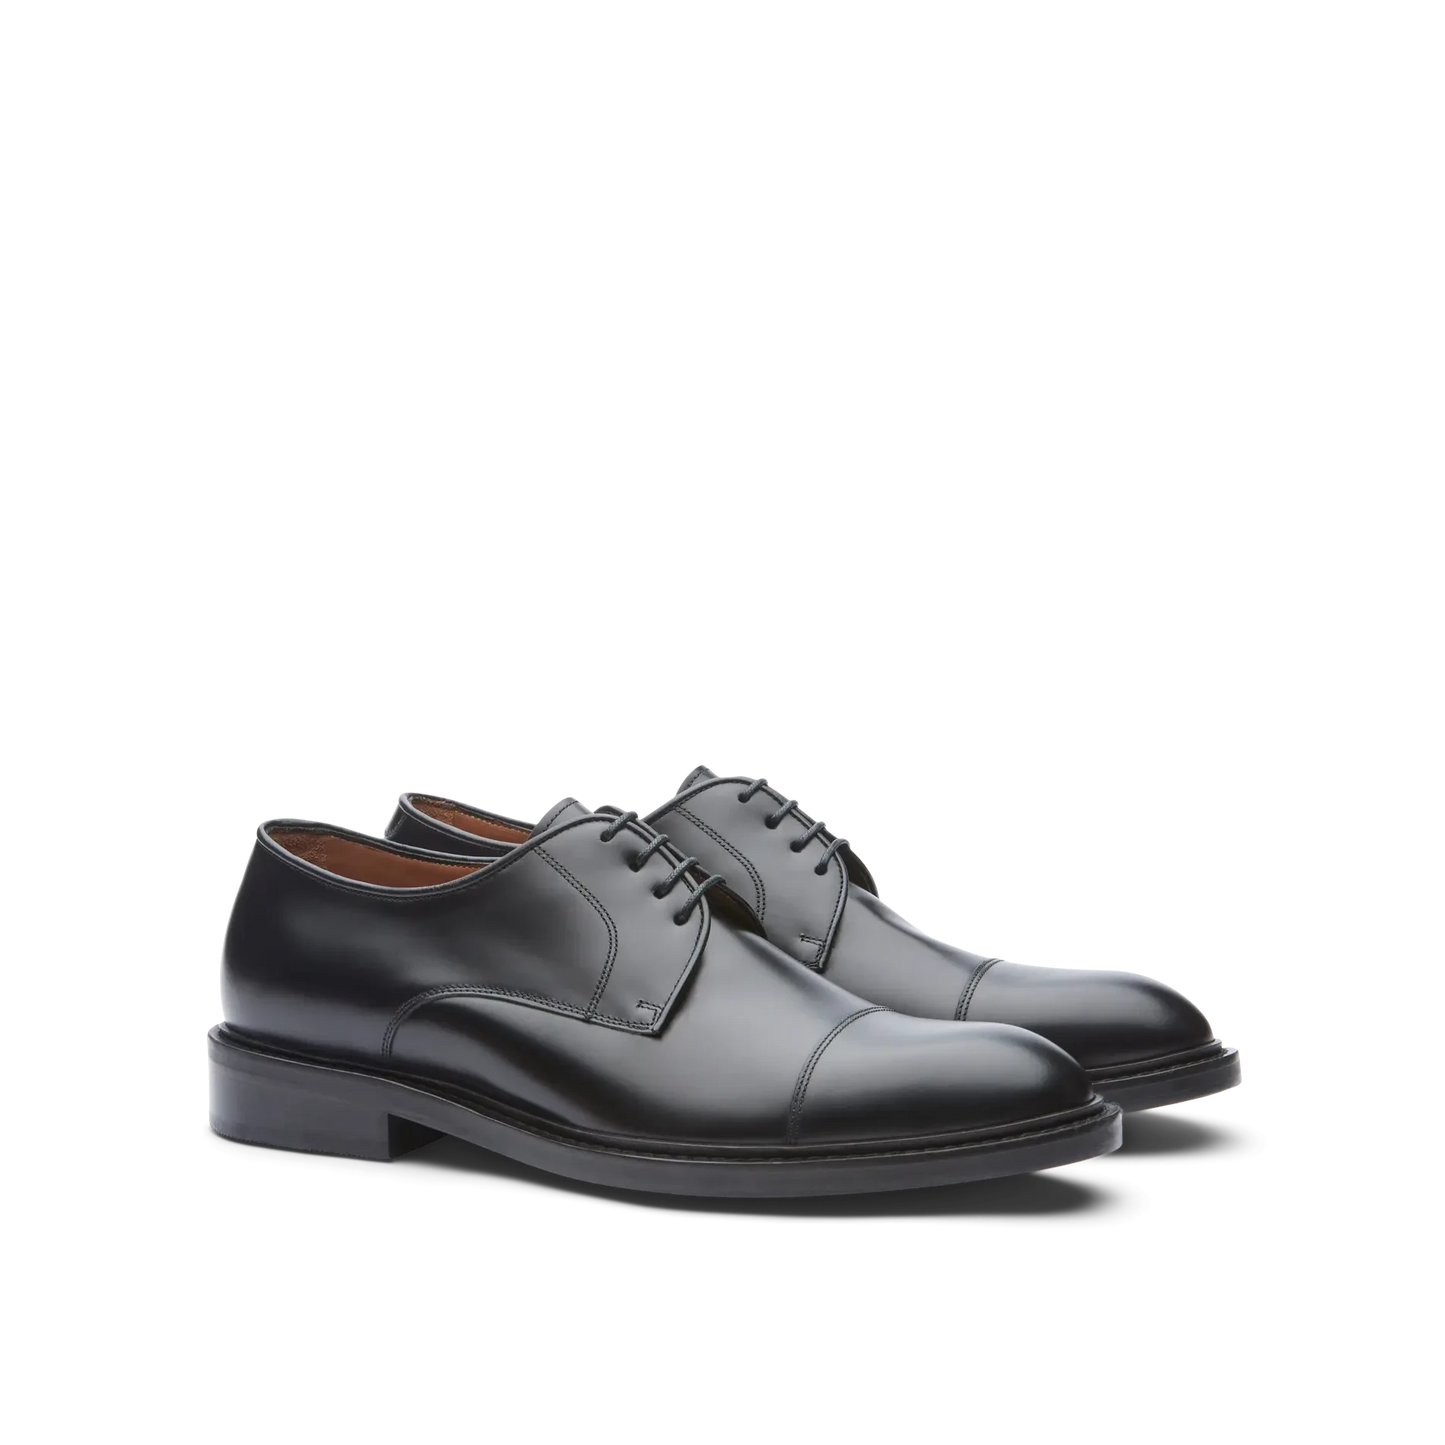 Zapatos Oxford De La Marca Lottusse Para Hombre Modelo Harrys Derbys De Vacuno SemibrillanteEn Color Negro